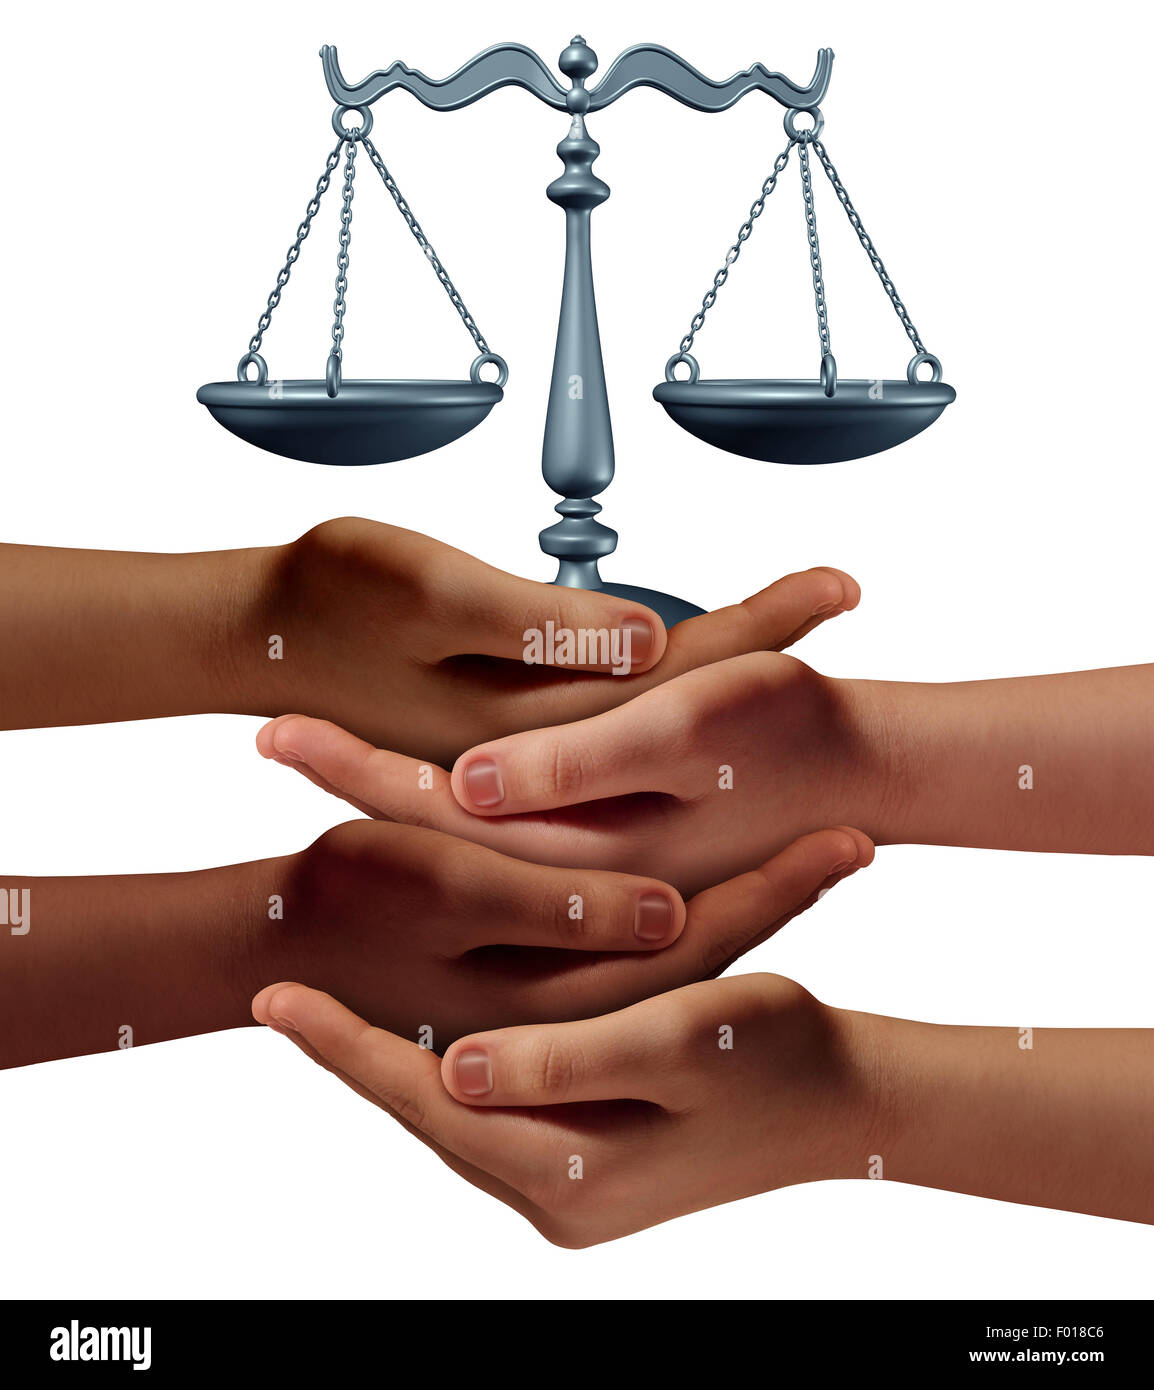 Community Legal Assistance concept avec un groupe de mains représentant divers groupes de personnes collaborant ensemble afin de fournir aux organismes d'appui et des conseils et de la justice tenant une échelle de la justice. Banque D'Images